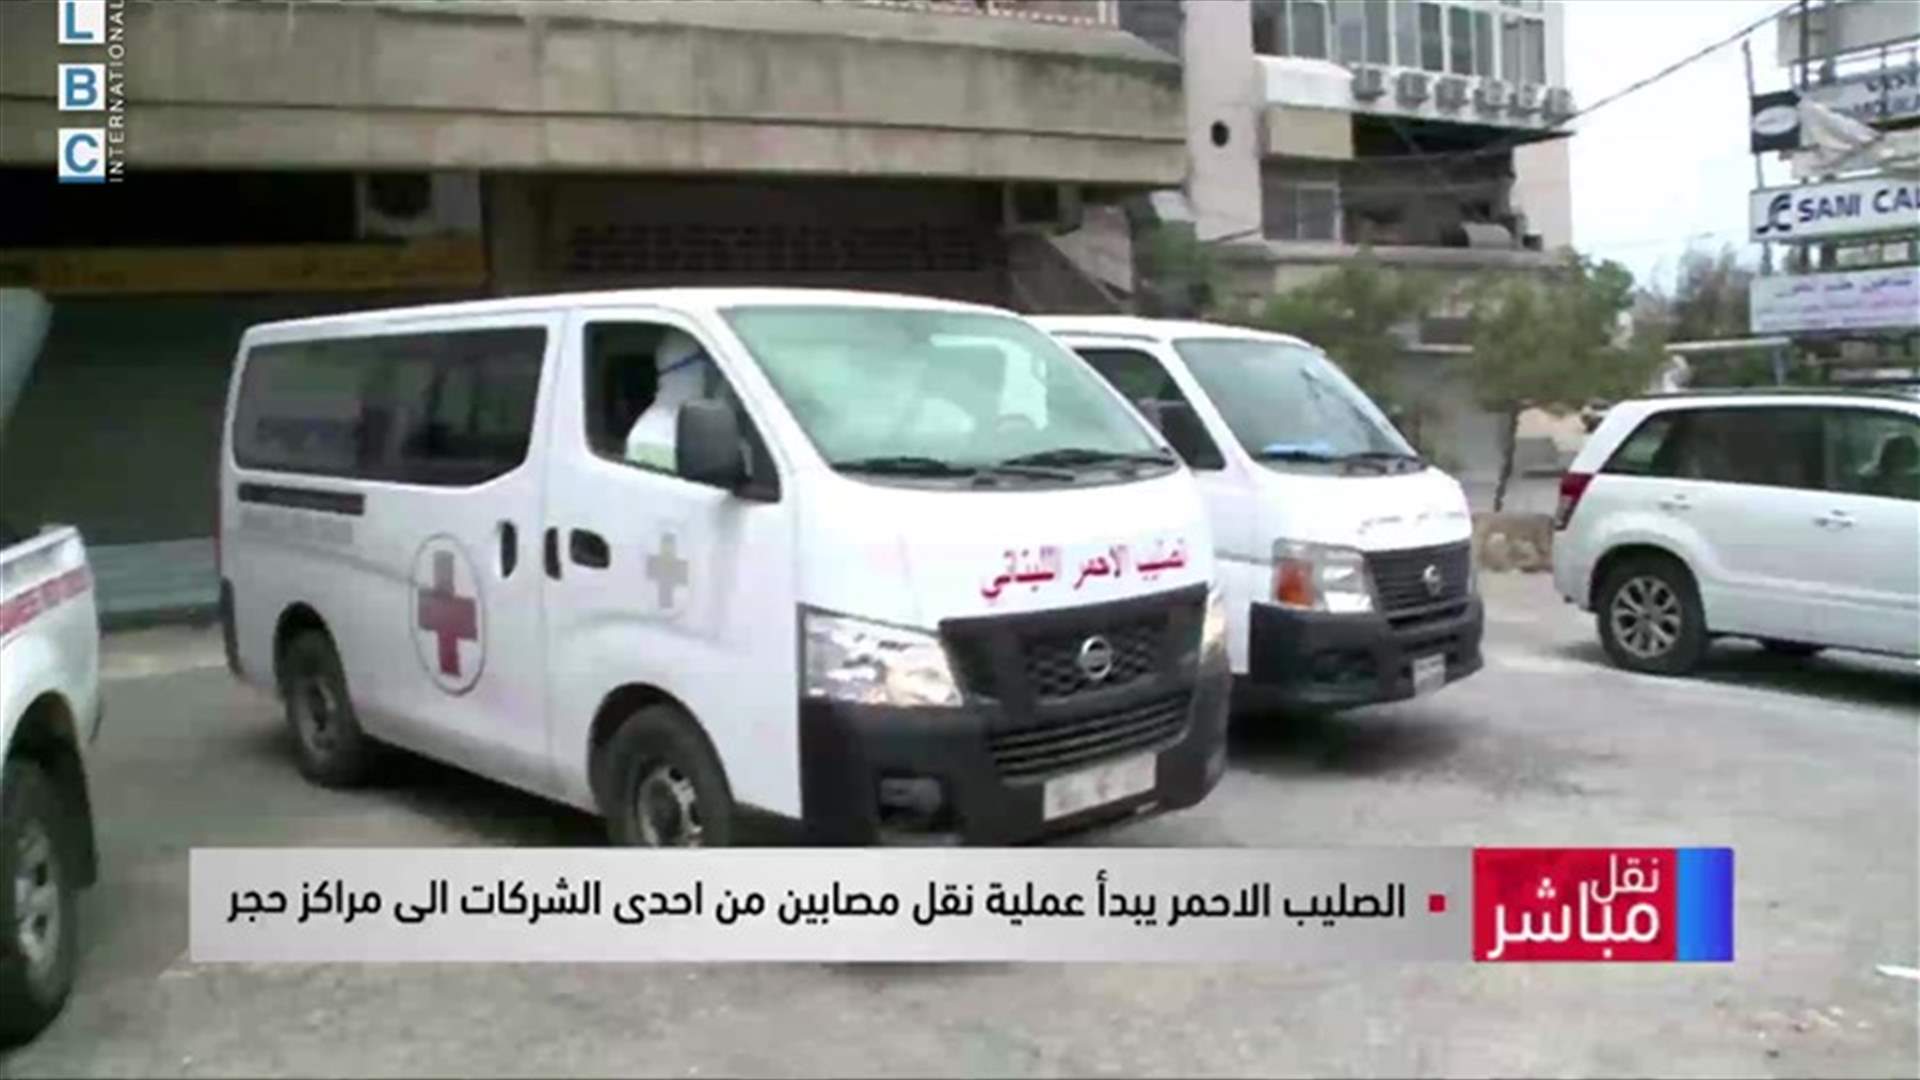 الصليب الأحمر ينقل مصابين بكورونا من إحدى الشركات إلى مراكز حجر (فيديو)